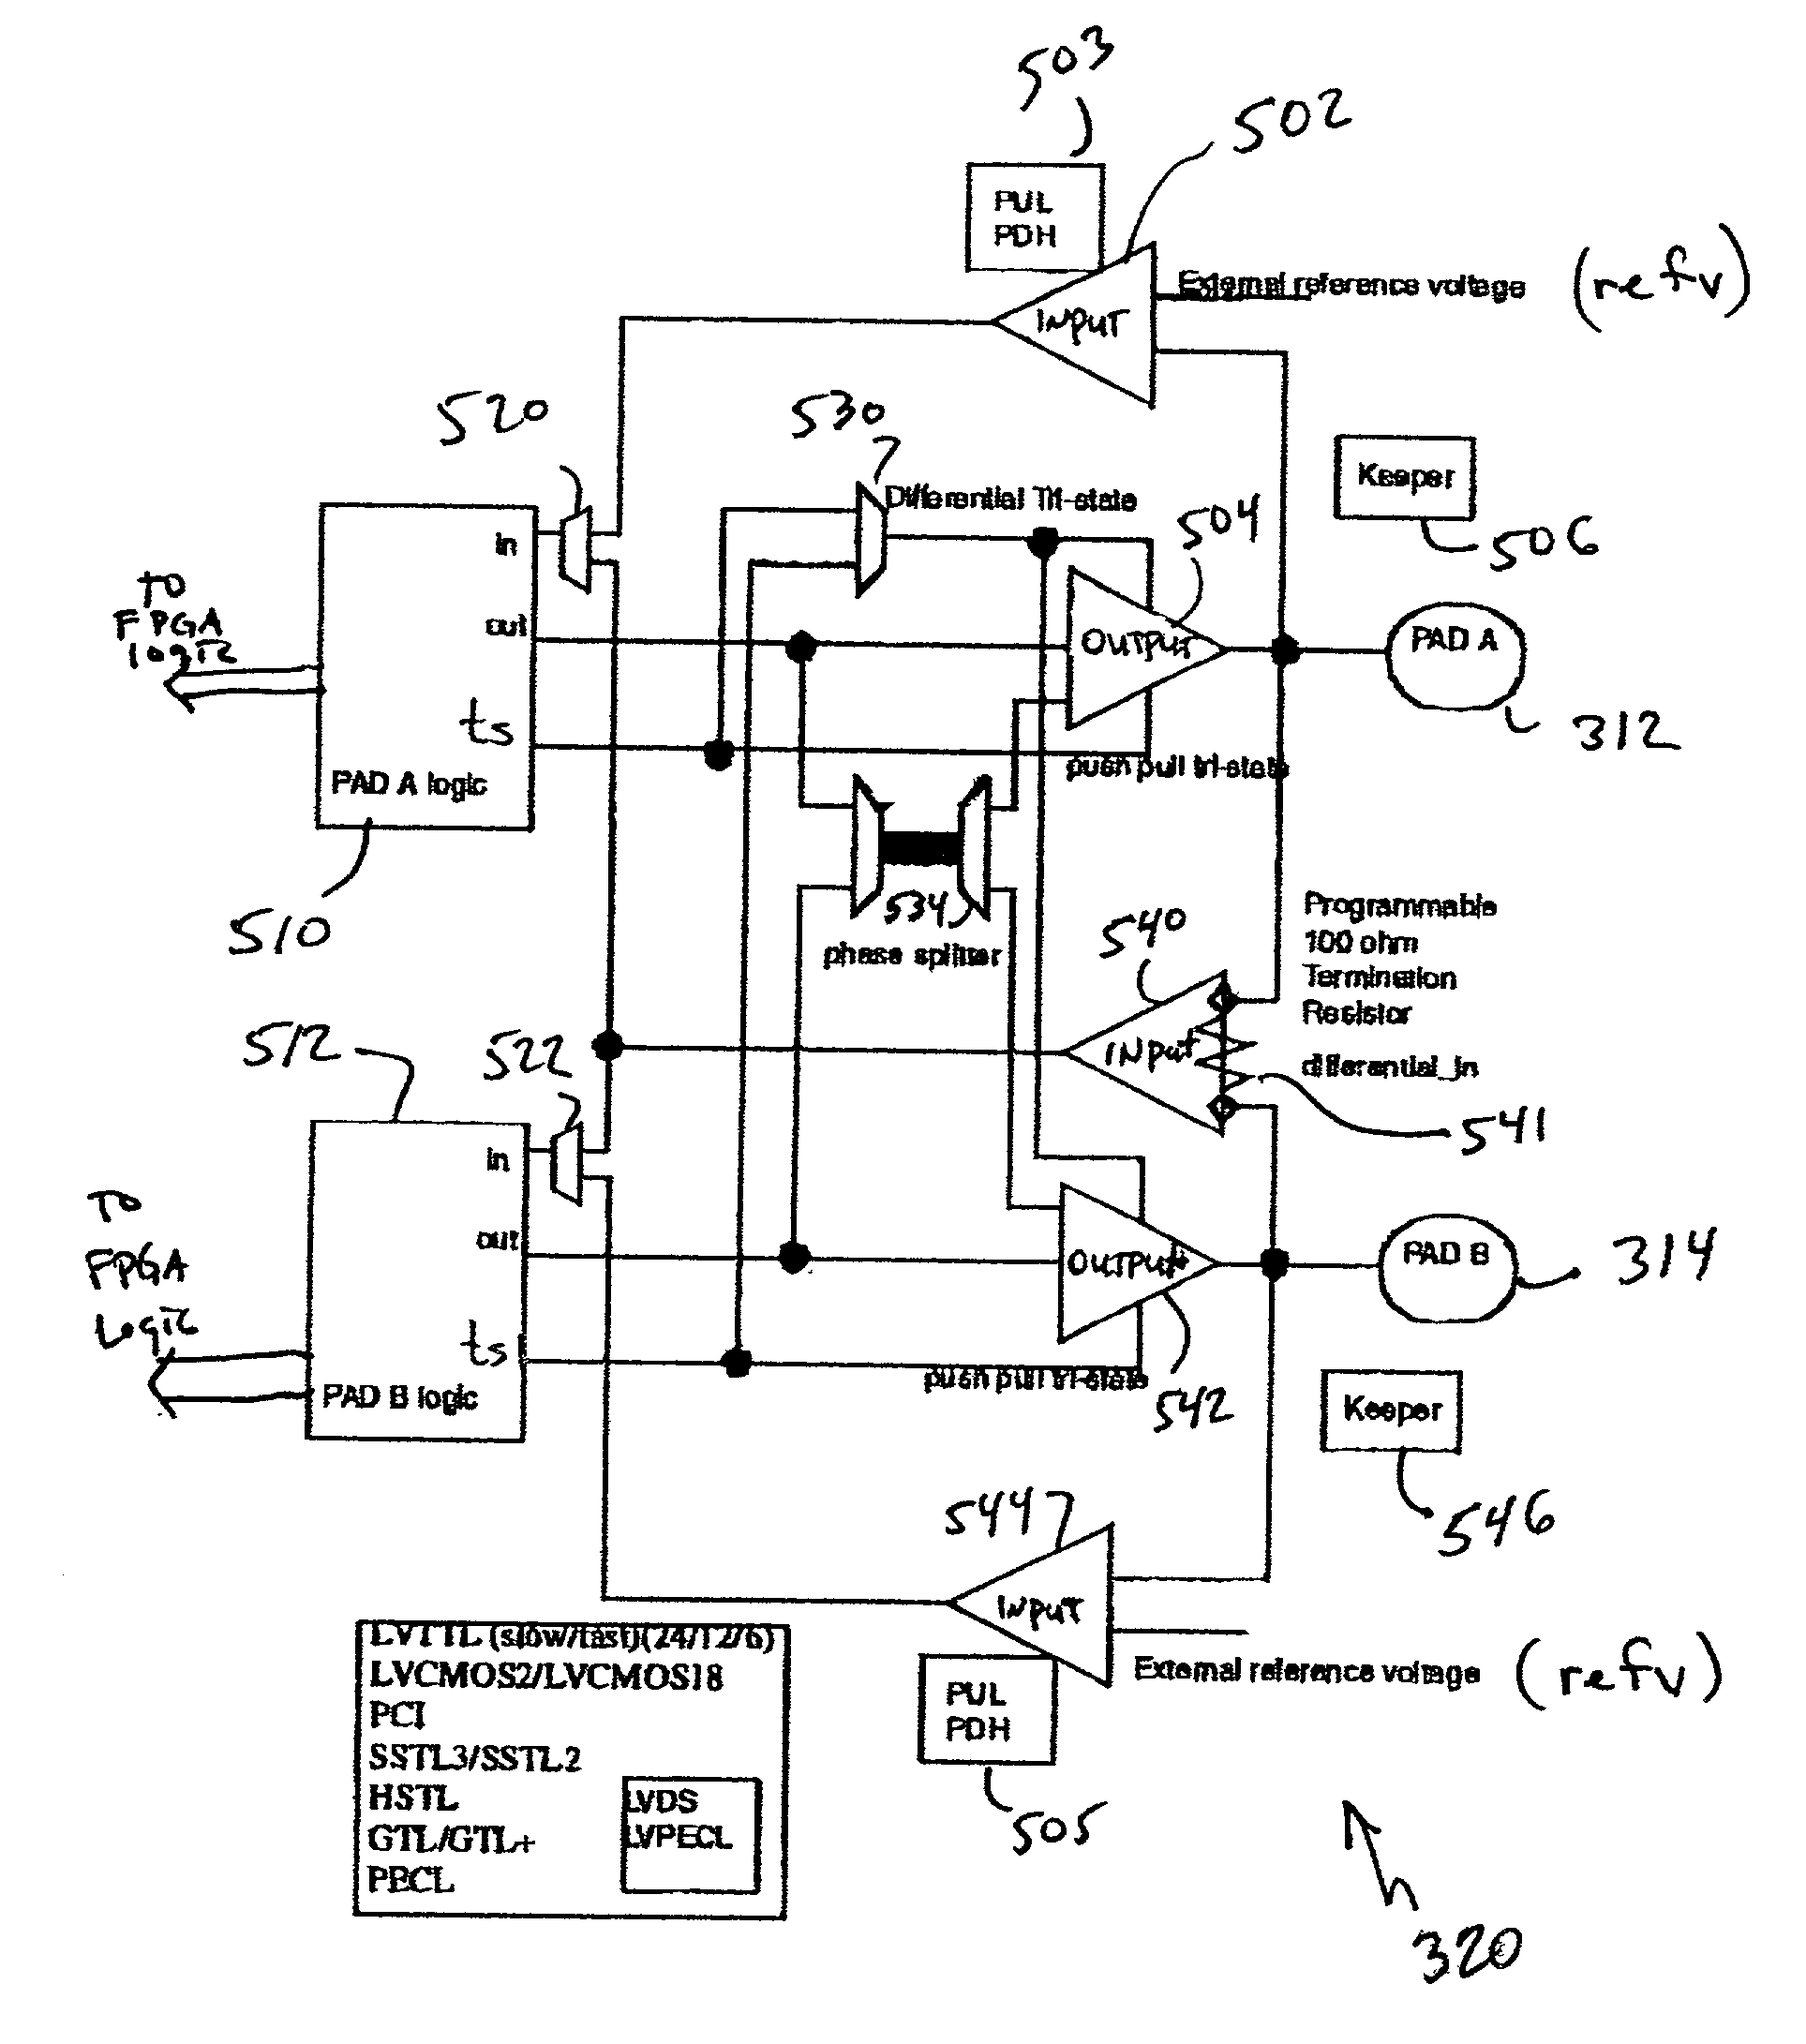 Multi-functional I/O buffers in a field programmable gate array (FPGA)